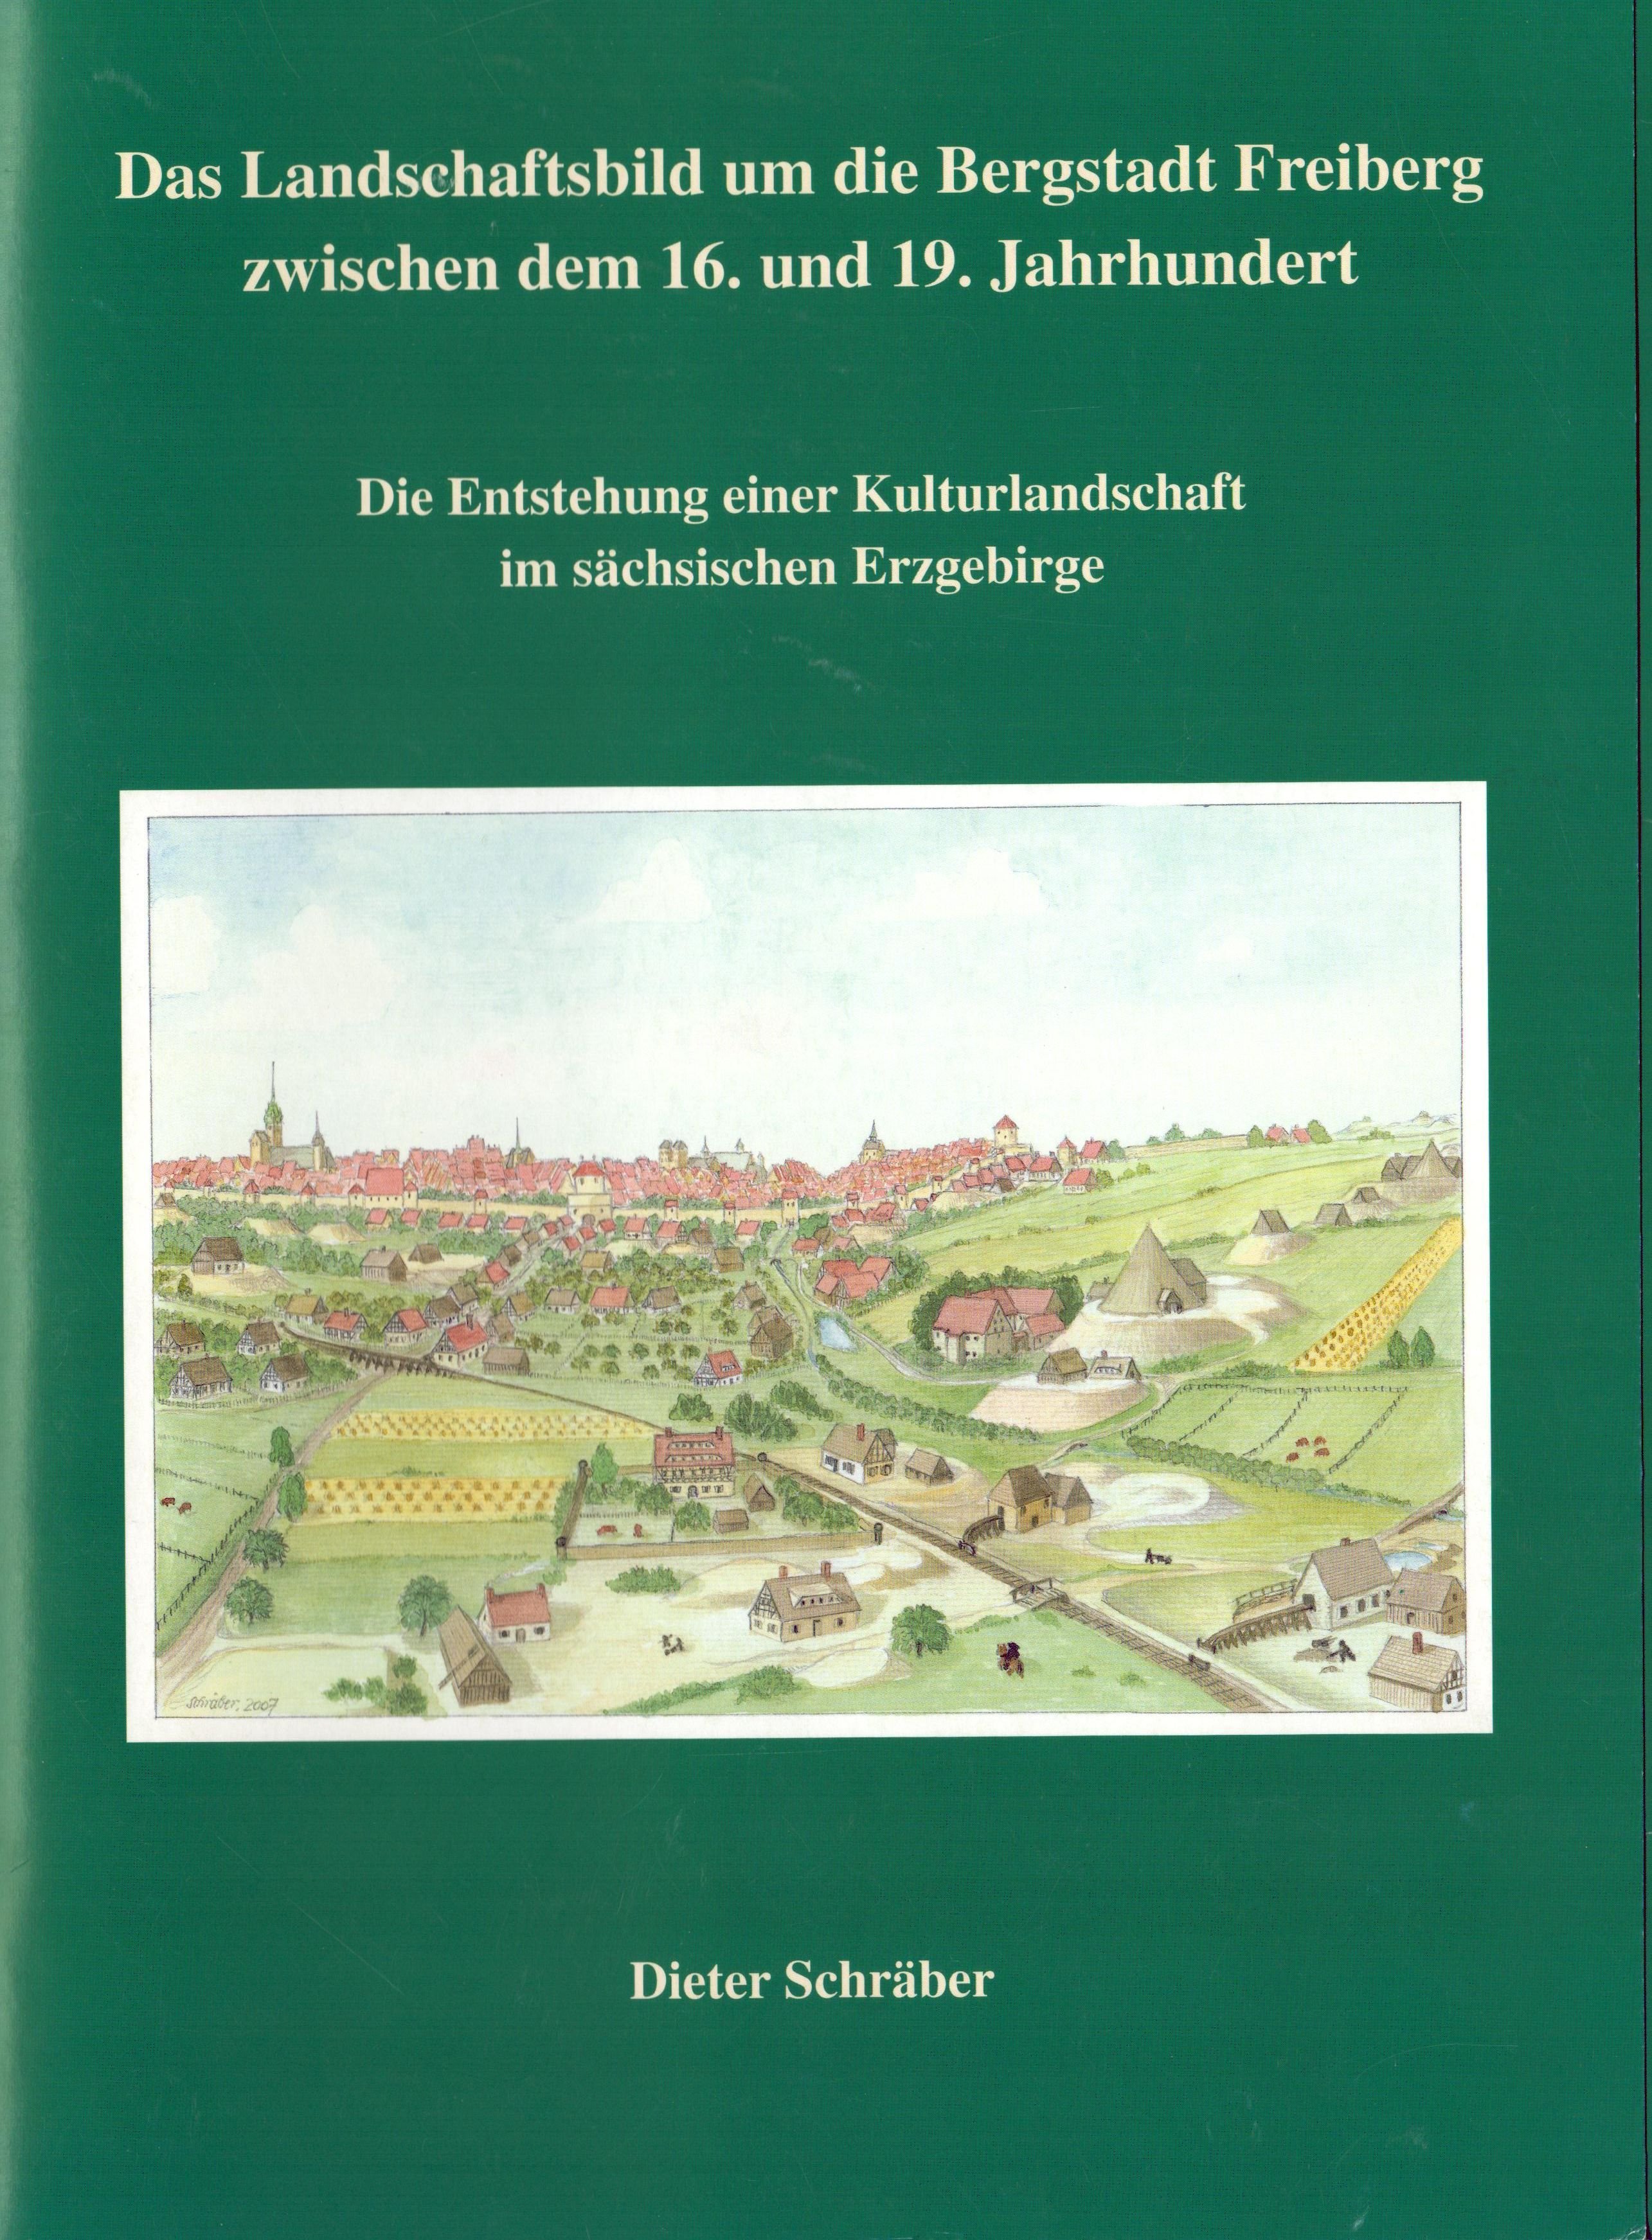 Das Landschaftsbild um die Bergstadt Freiberg zwischen dem 16. und 19. Jahrhundert (Archiv SAXONIA-FREIBERG-STIFTUNG CC BY-NC-SA)